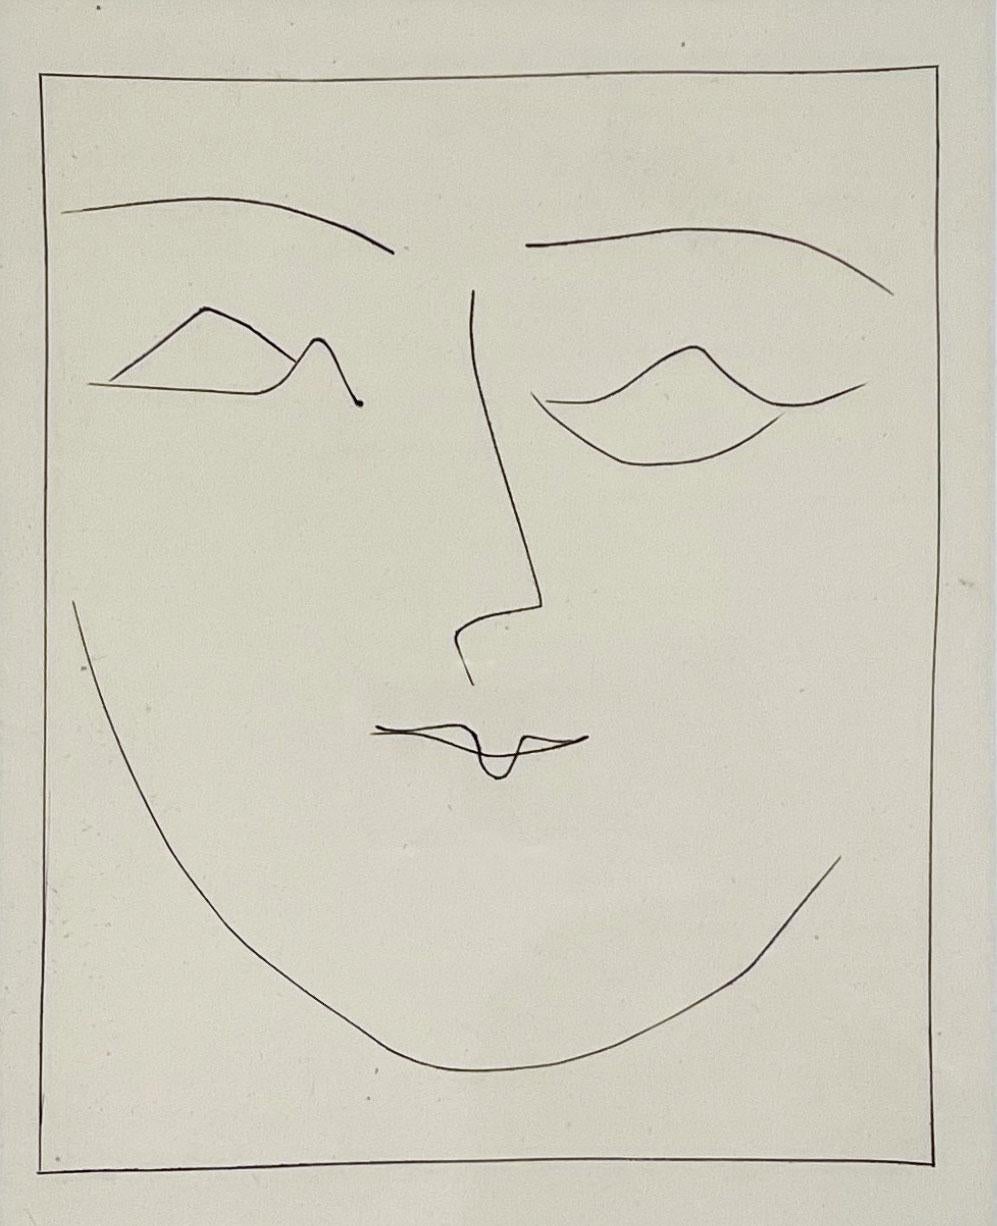 Pablo Picasso Portrait Print – Quadratischer Kopf einer Frau auf einem Beutel, von Carmen